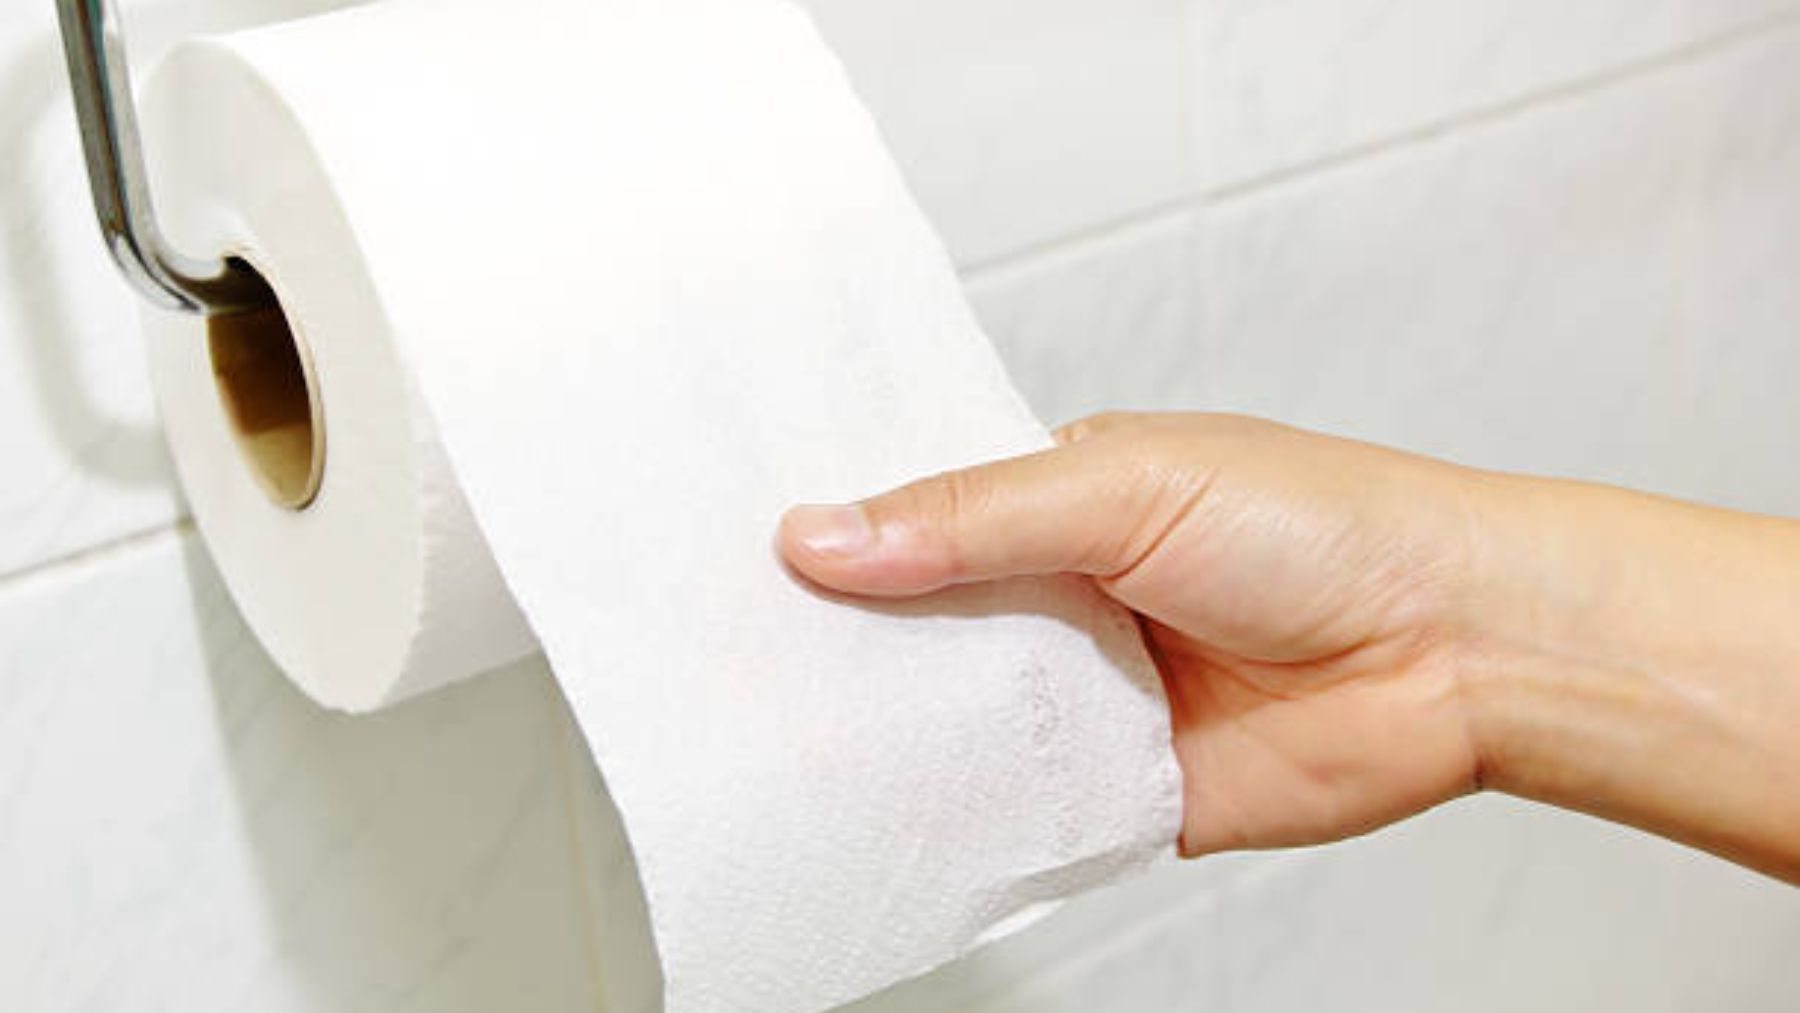 El papel higiénico en los baños públicos puede tener unas manchas que debemos evitar a toda costa